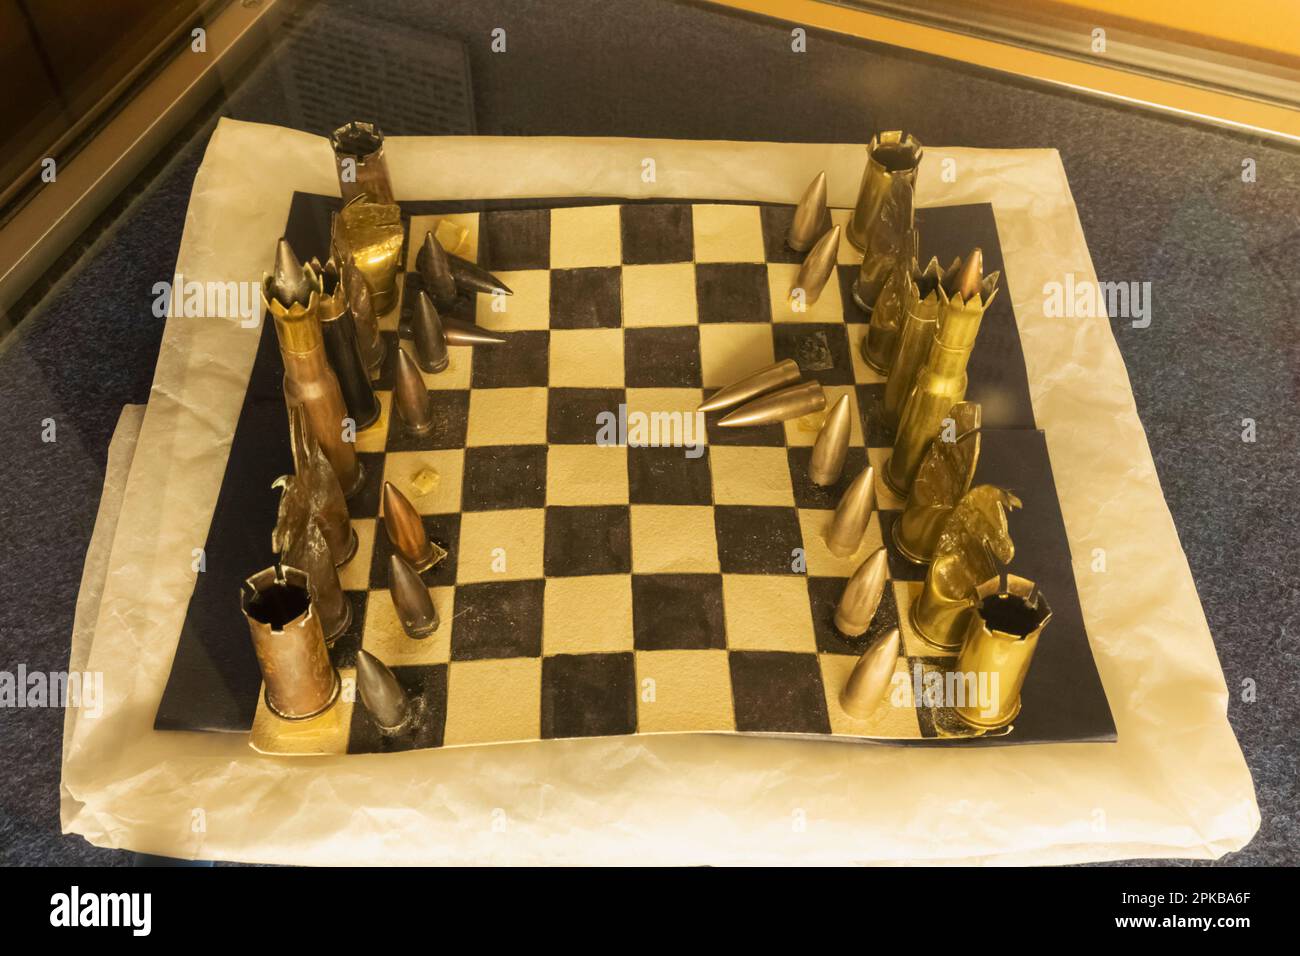 Inghilterra, Dorset, Blandford Forum, Royal Signals Museum, esposizione di un set di scacchi fatto da proiettili e involucri Shell Foto Stock